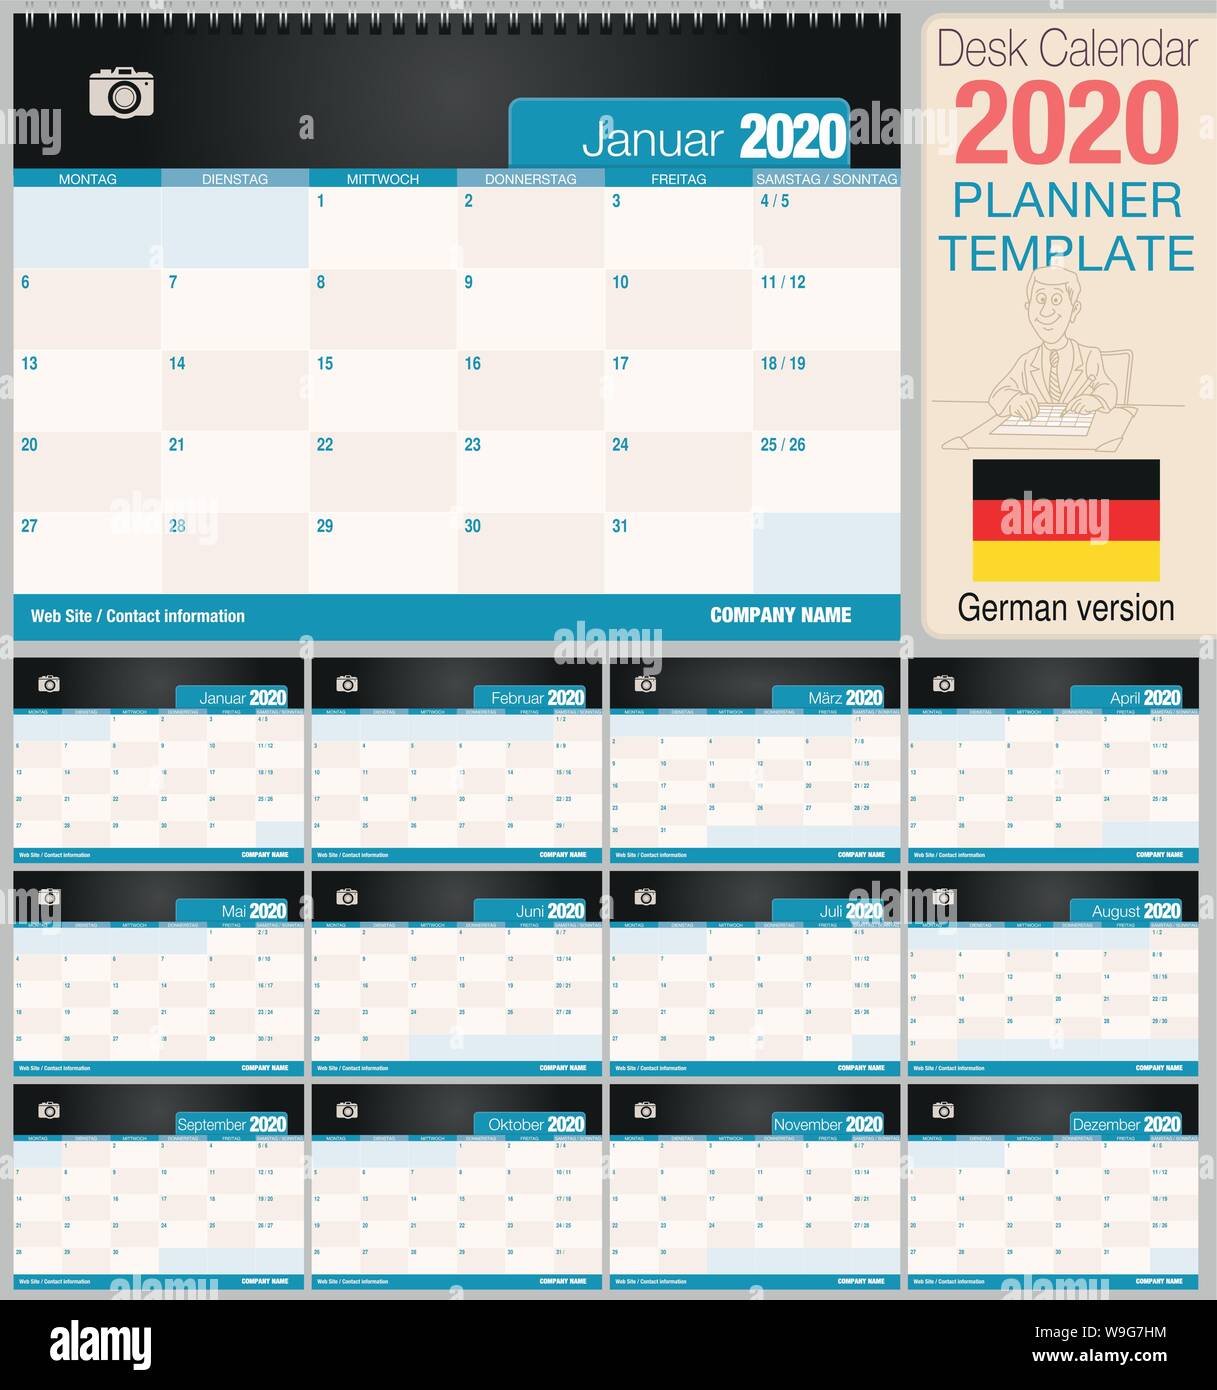 Utile scrivania calendario 2020 con lo spazio per posizionare una foto. Dimensioni: 210 mm x 148 mm. Versione in tedesco - immagine vettoriale Illustrazione Vettoriale